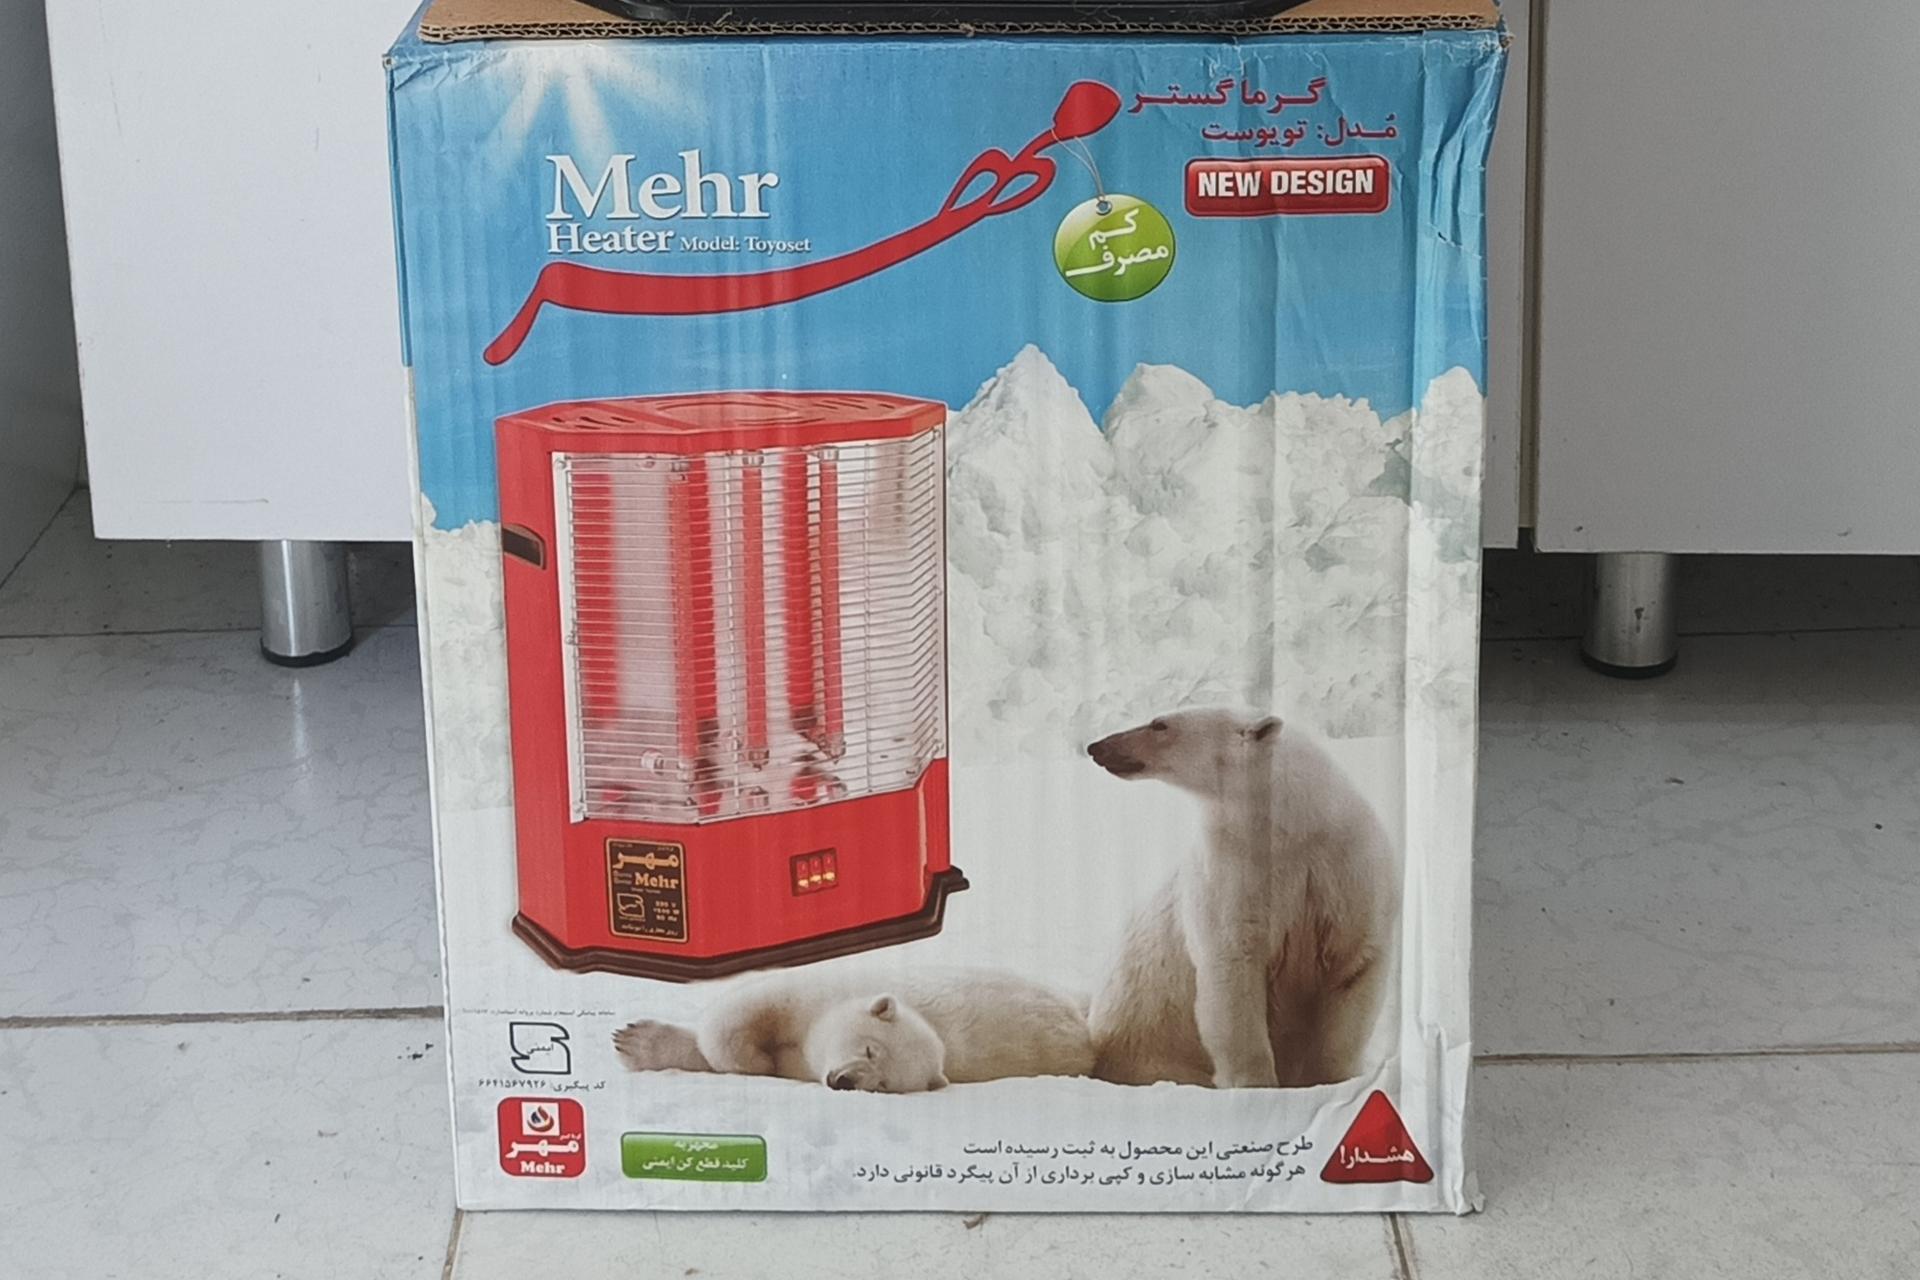 جعبه بخاری برقی گرما گستر مهر تویوست Mehr Toyoset